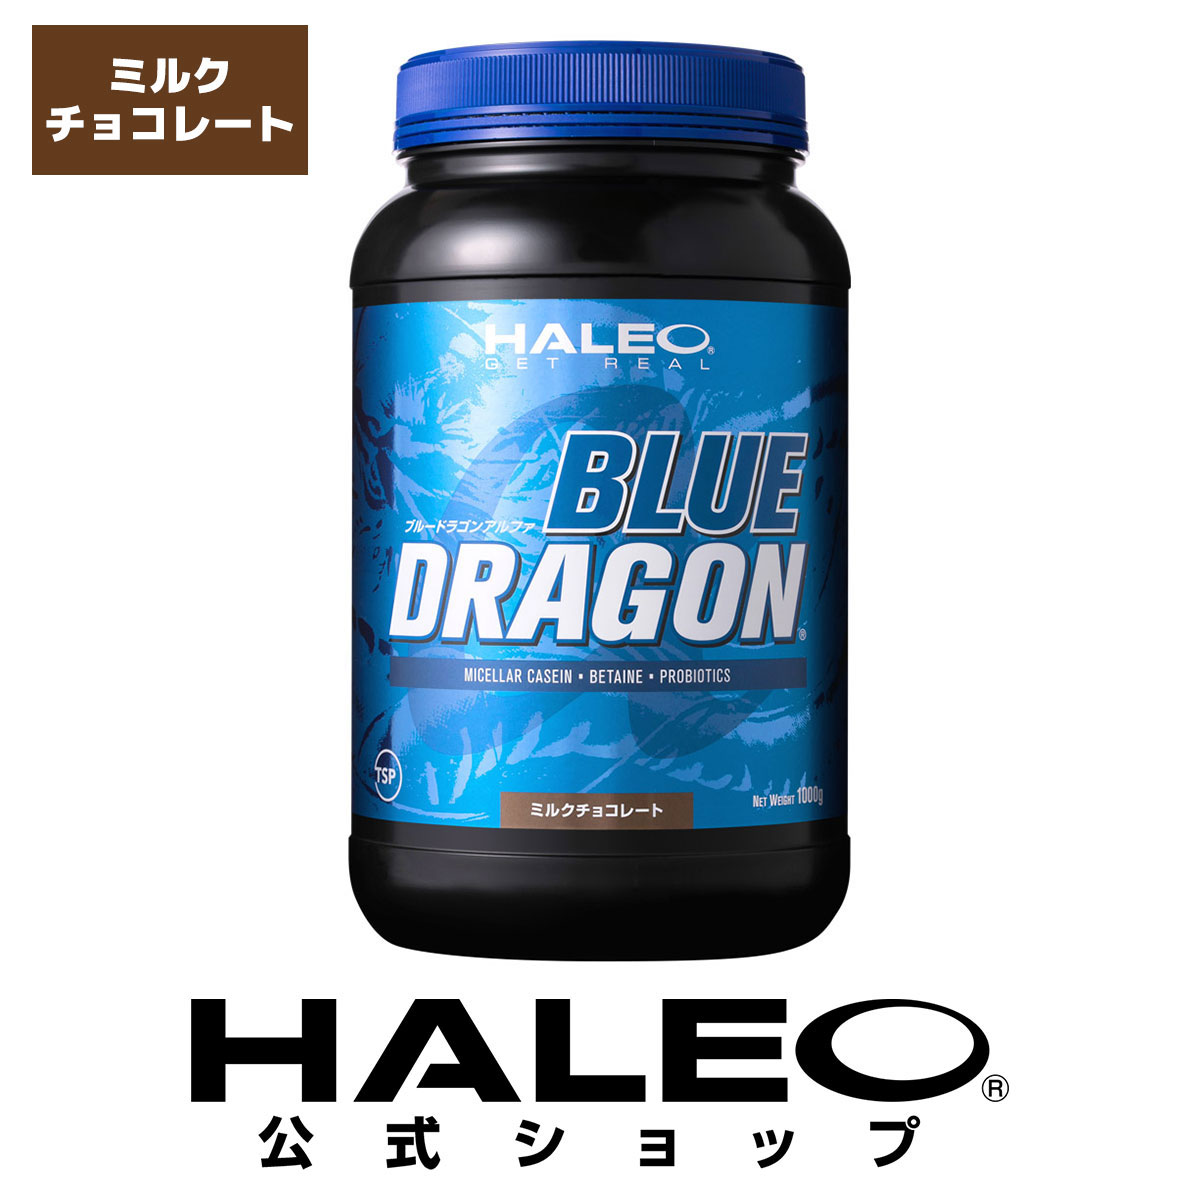 HALEO ハレオ ブルードラゴンアルファ BLUE DRAGON ALPHA 1kg プロテイン 約33食分 ギフト